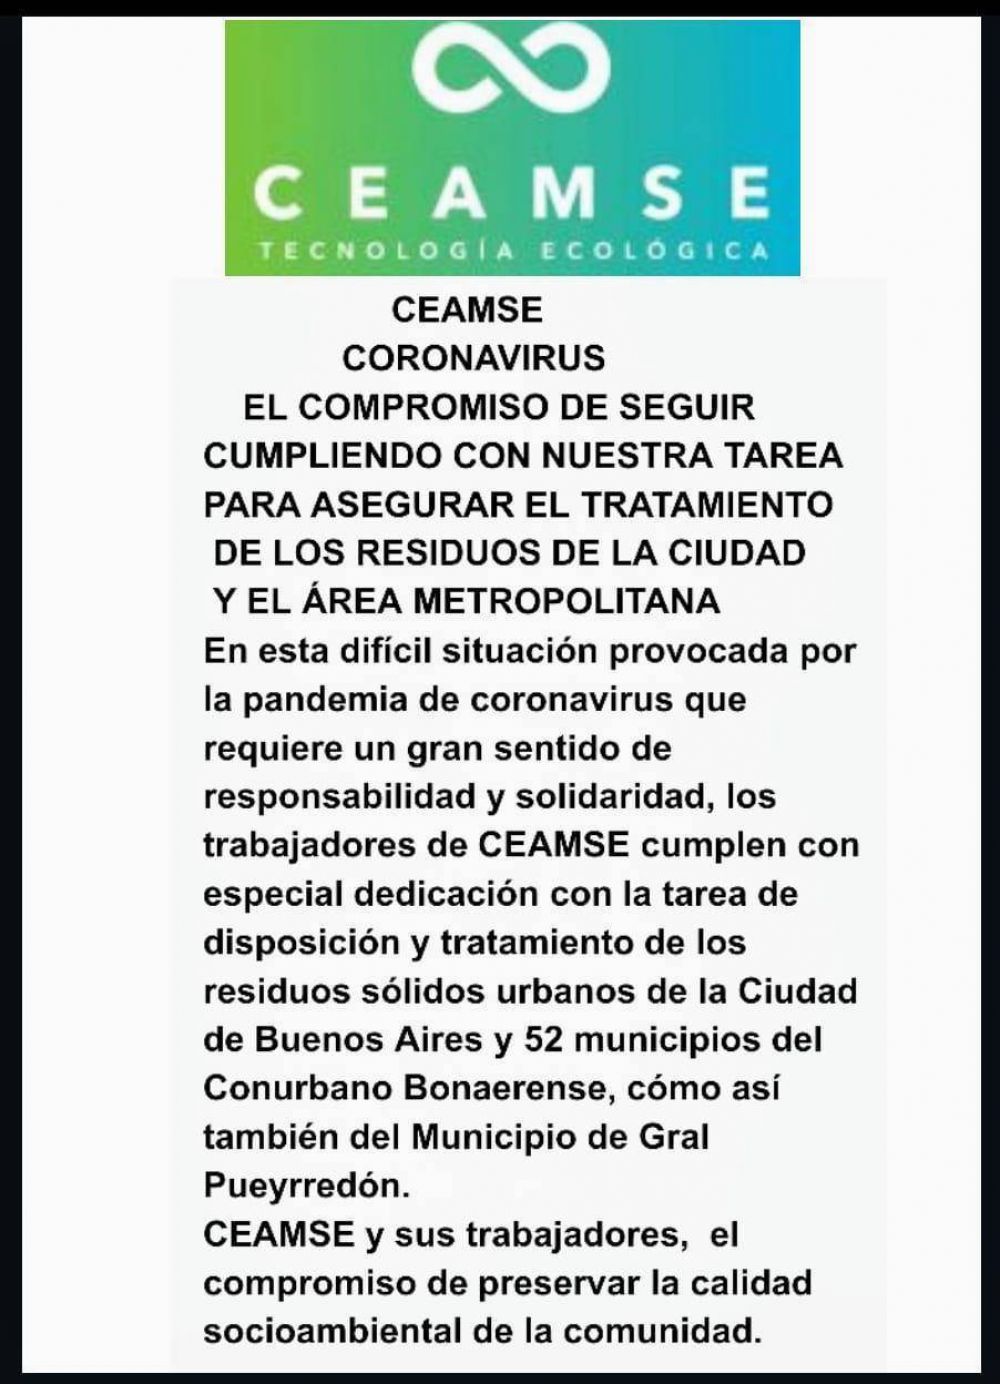 CEAMSE asegura el tratamiento de los residuos en Mar del Plata